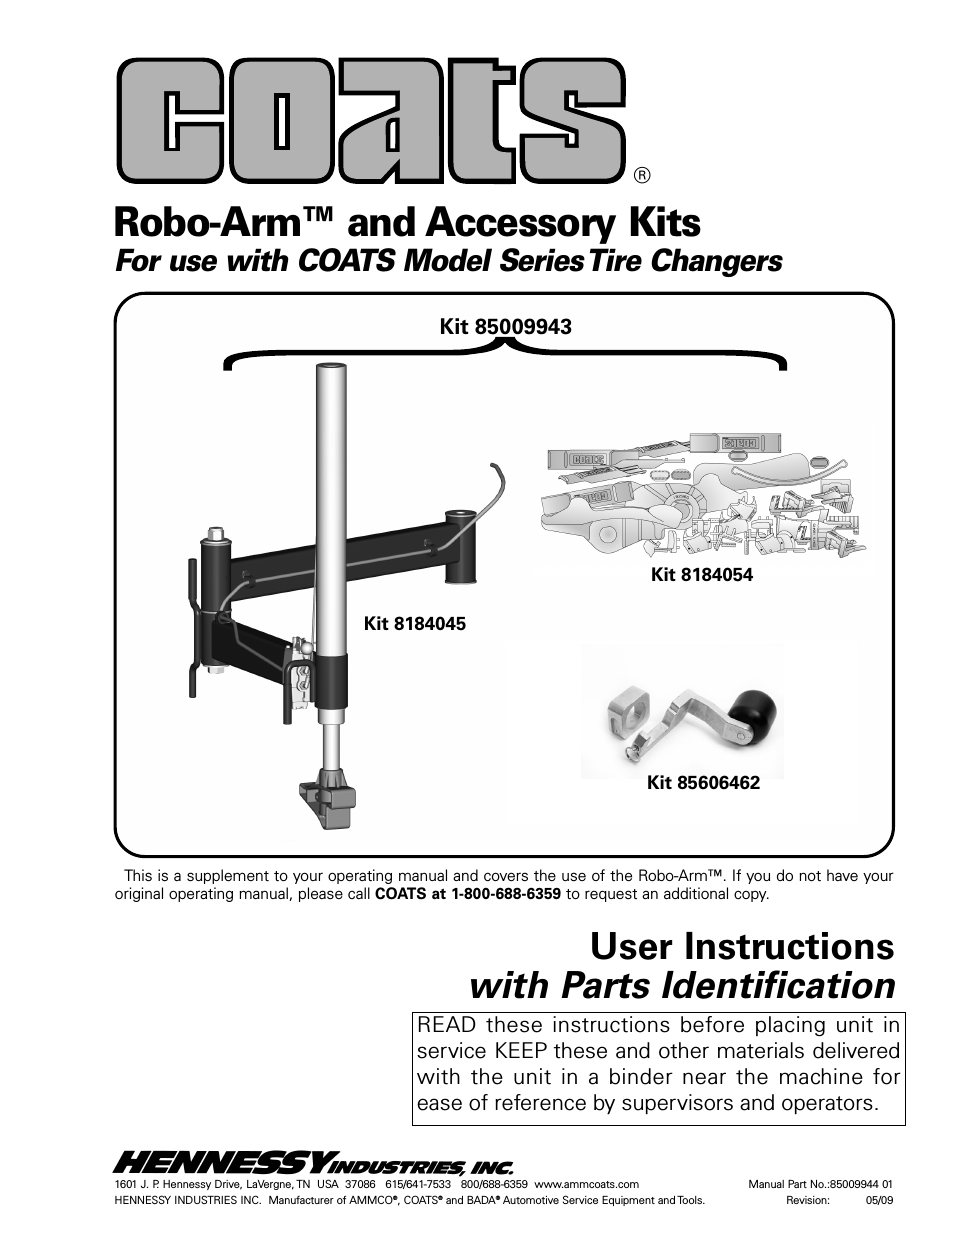 Kit 85009943 Robo-Arm and Accessory Kits